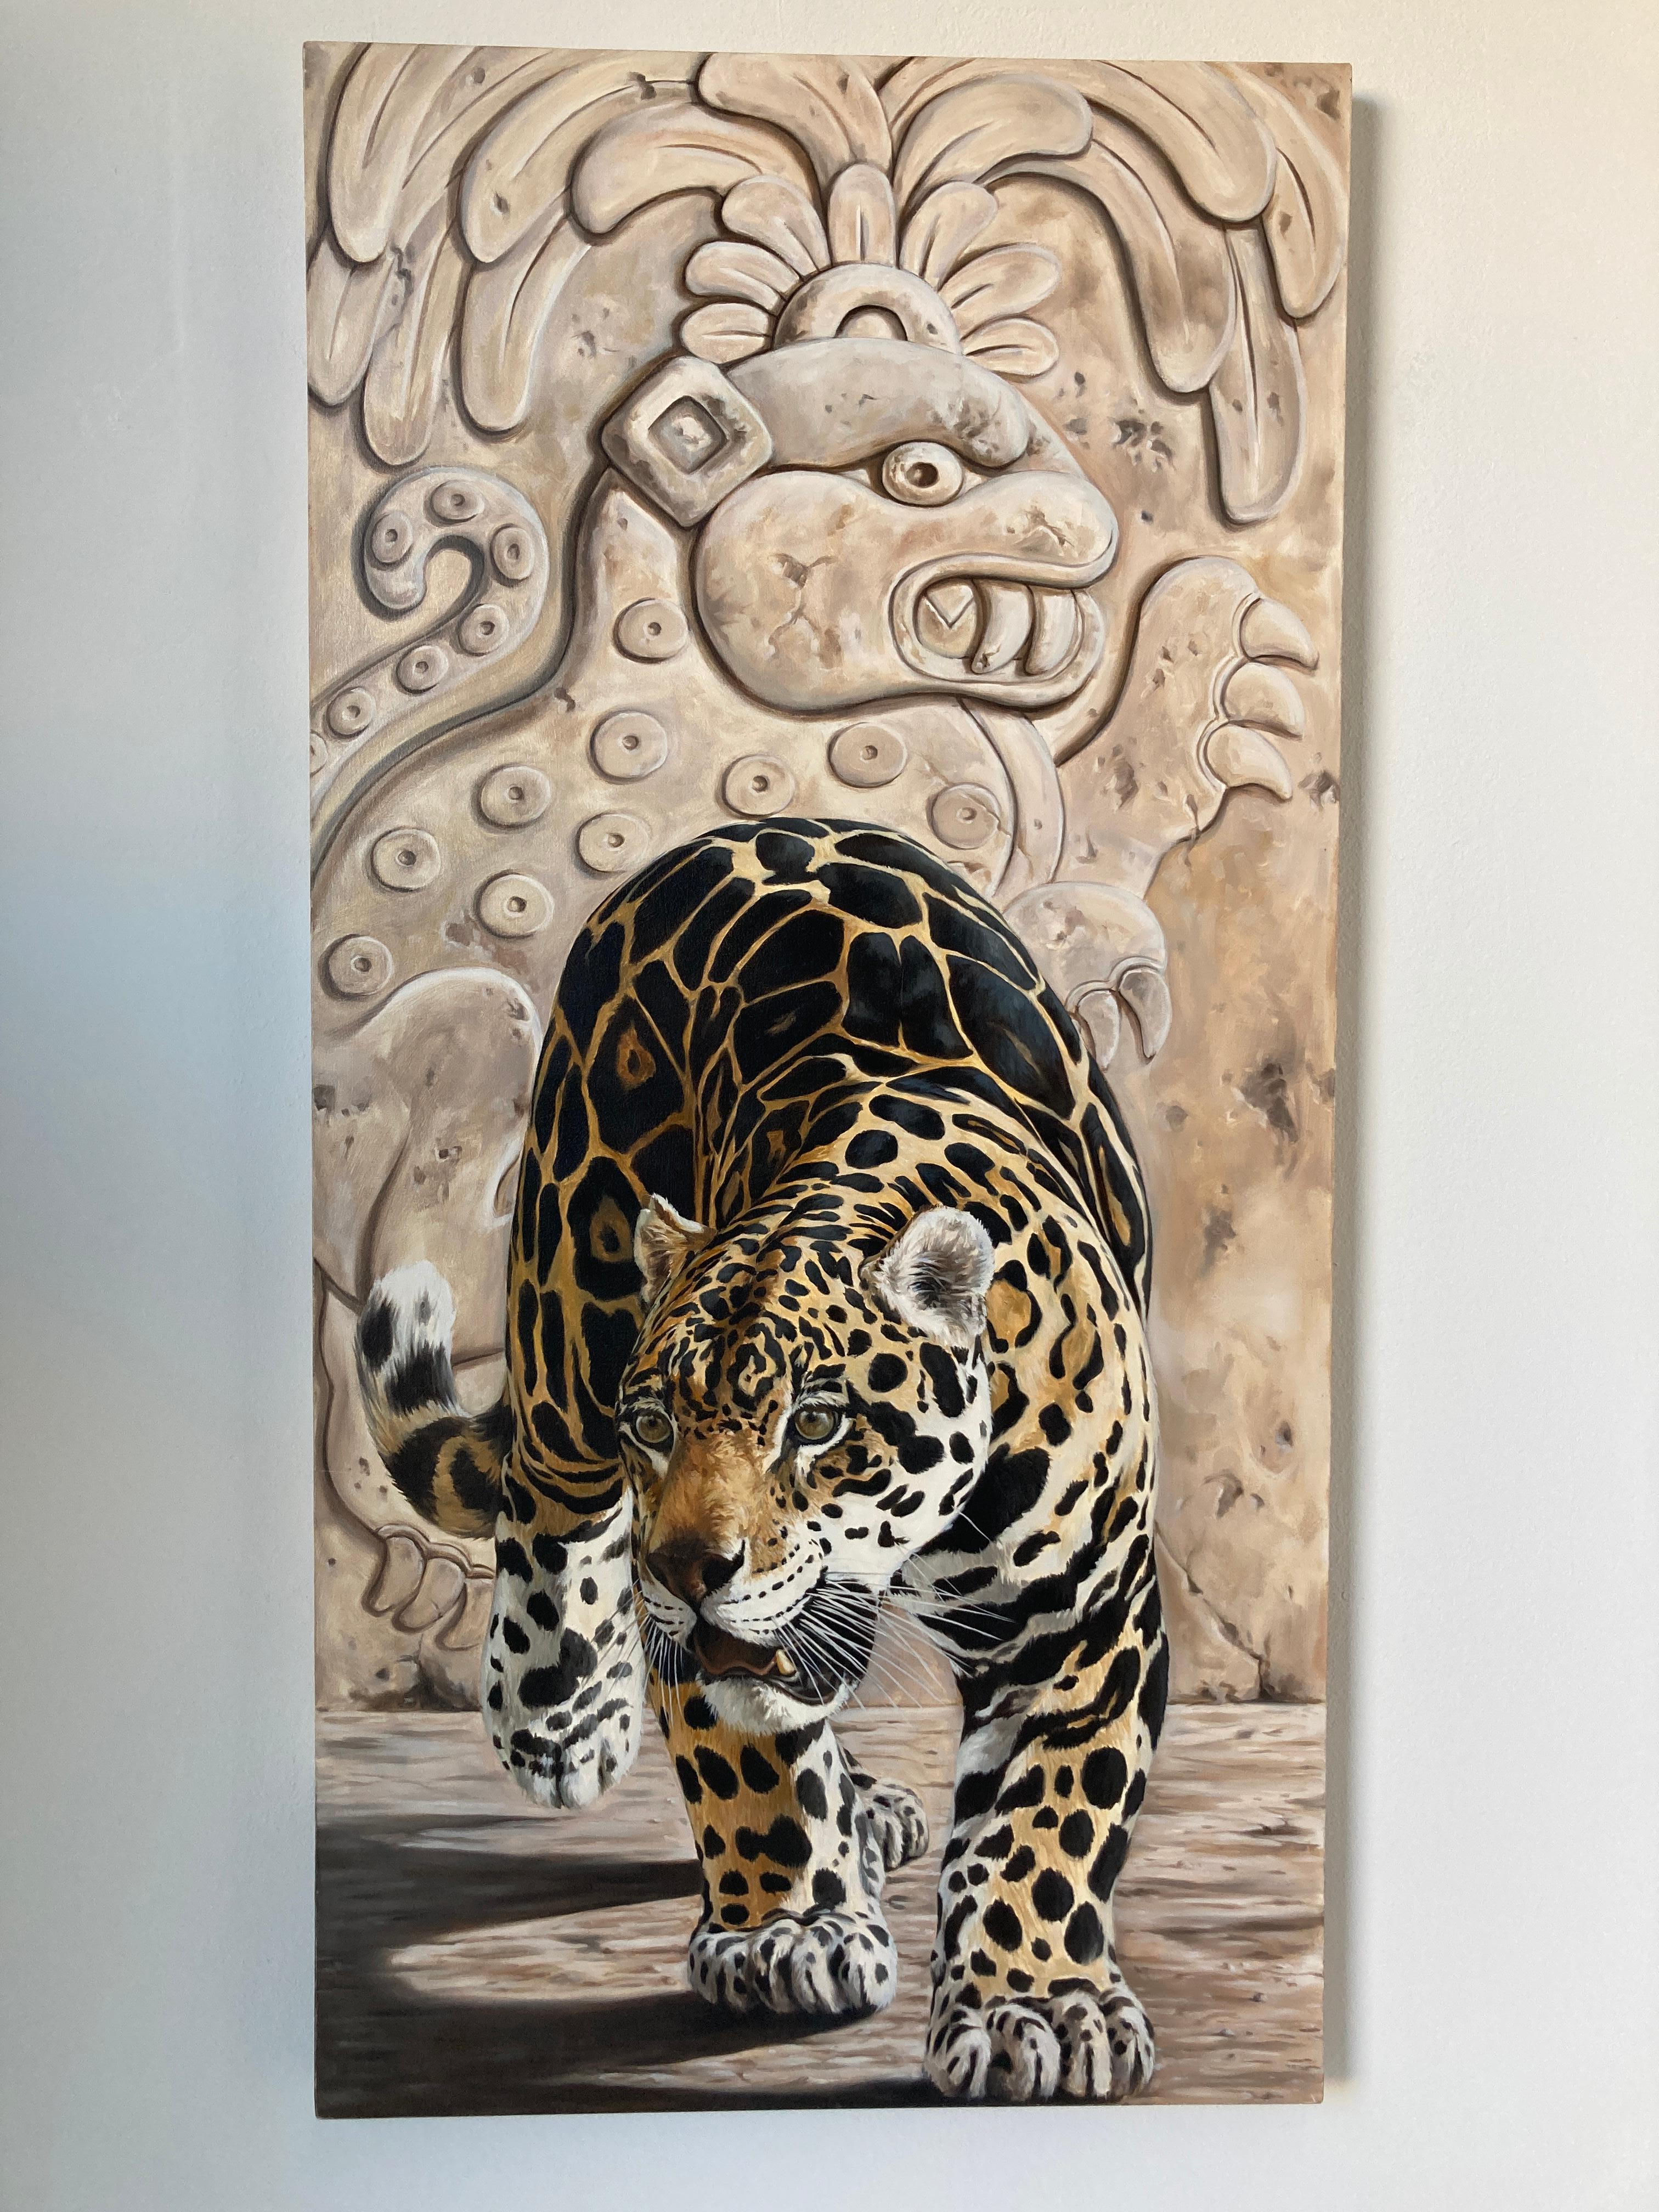 Très grande huile sur toile, tableau ancien, Jaguar par Kindrie Grove, Artiste Canadien.
Grande peinture à l'huile représentant un jaguar maya.
Fabriqué en 2002.
L'architecture du Jaguar est d'origine maya et représente le dieu Jaguar portant une